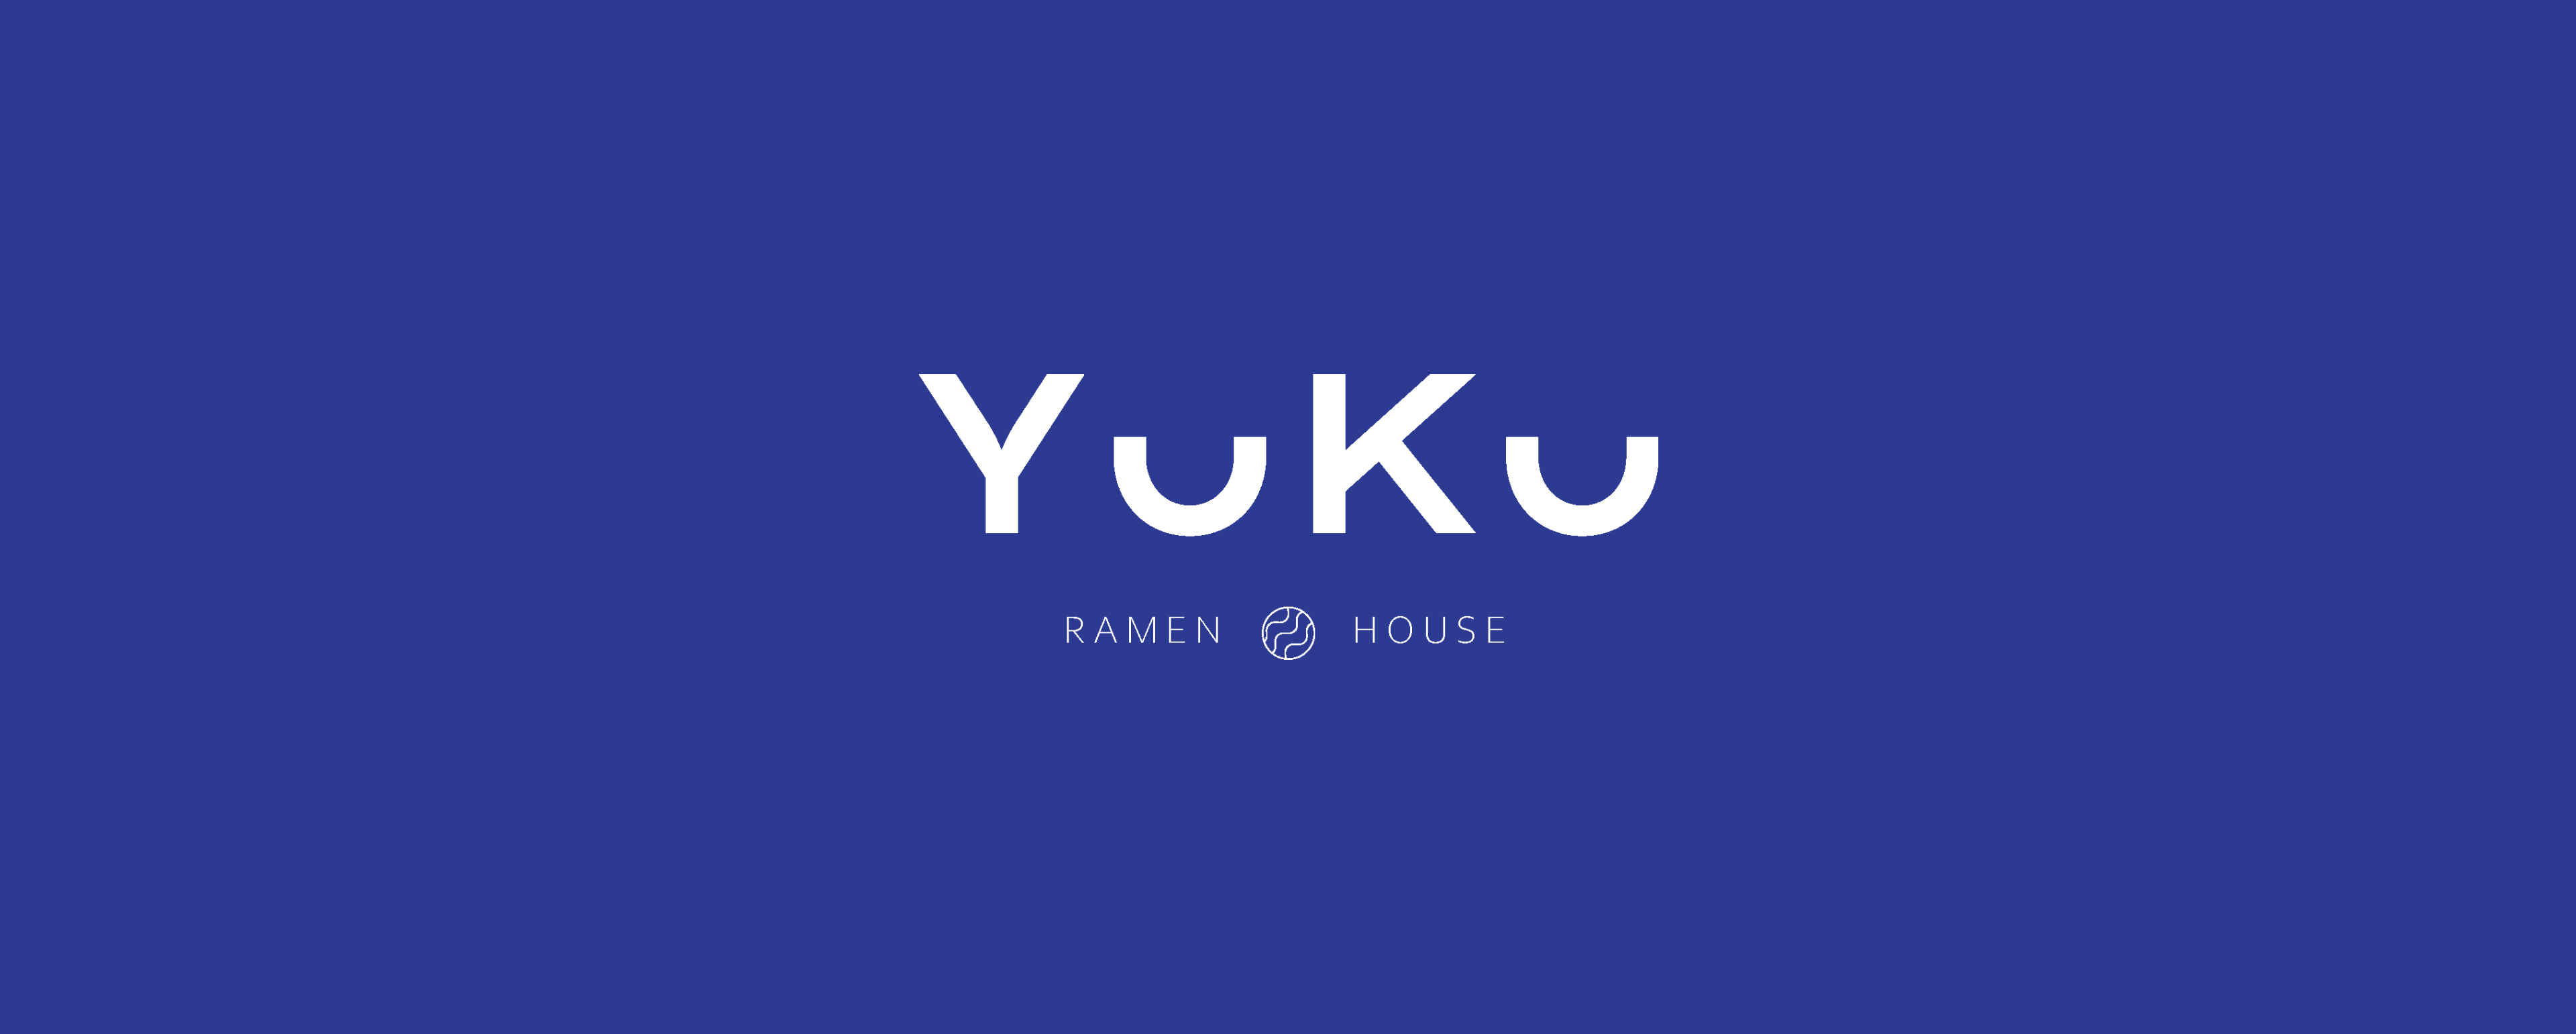 Yuku ramen logo design branding